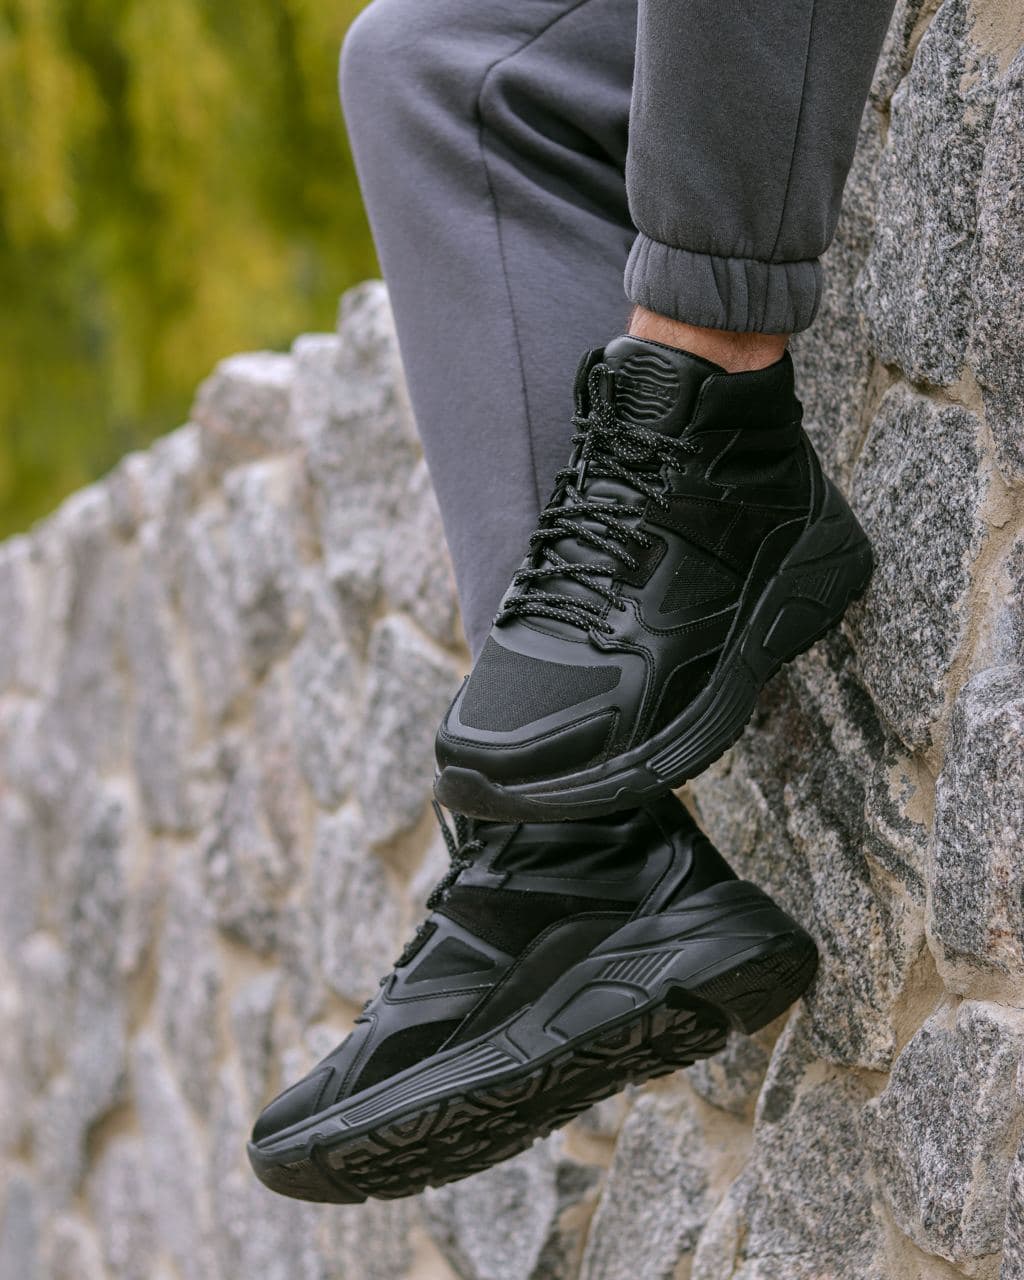 Мужские зимние кроссовки кожаные (ботинки) черные Protect - Фото 3